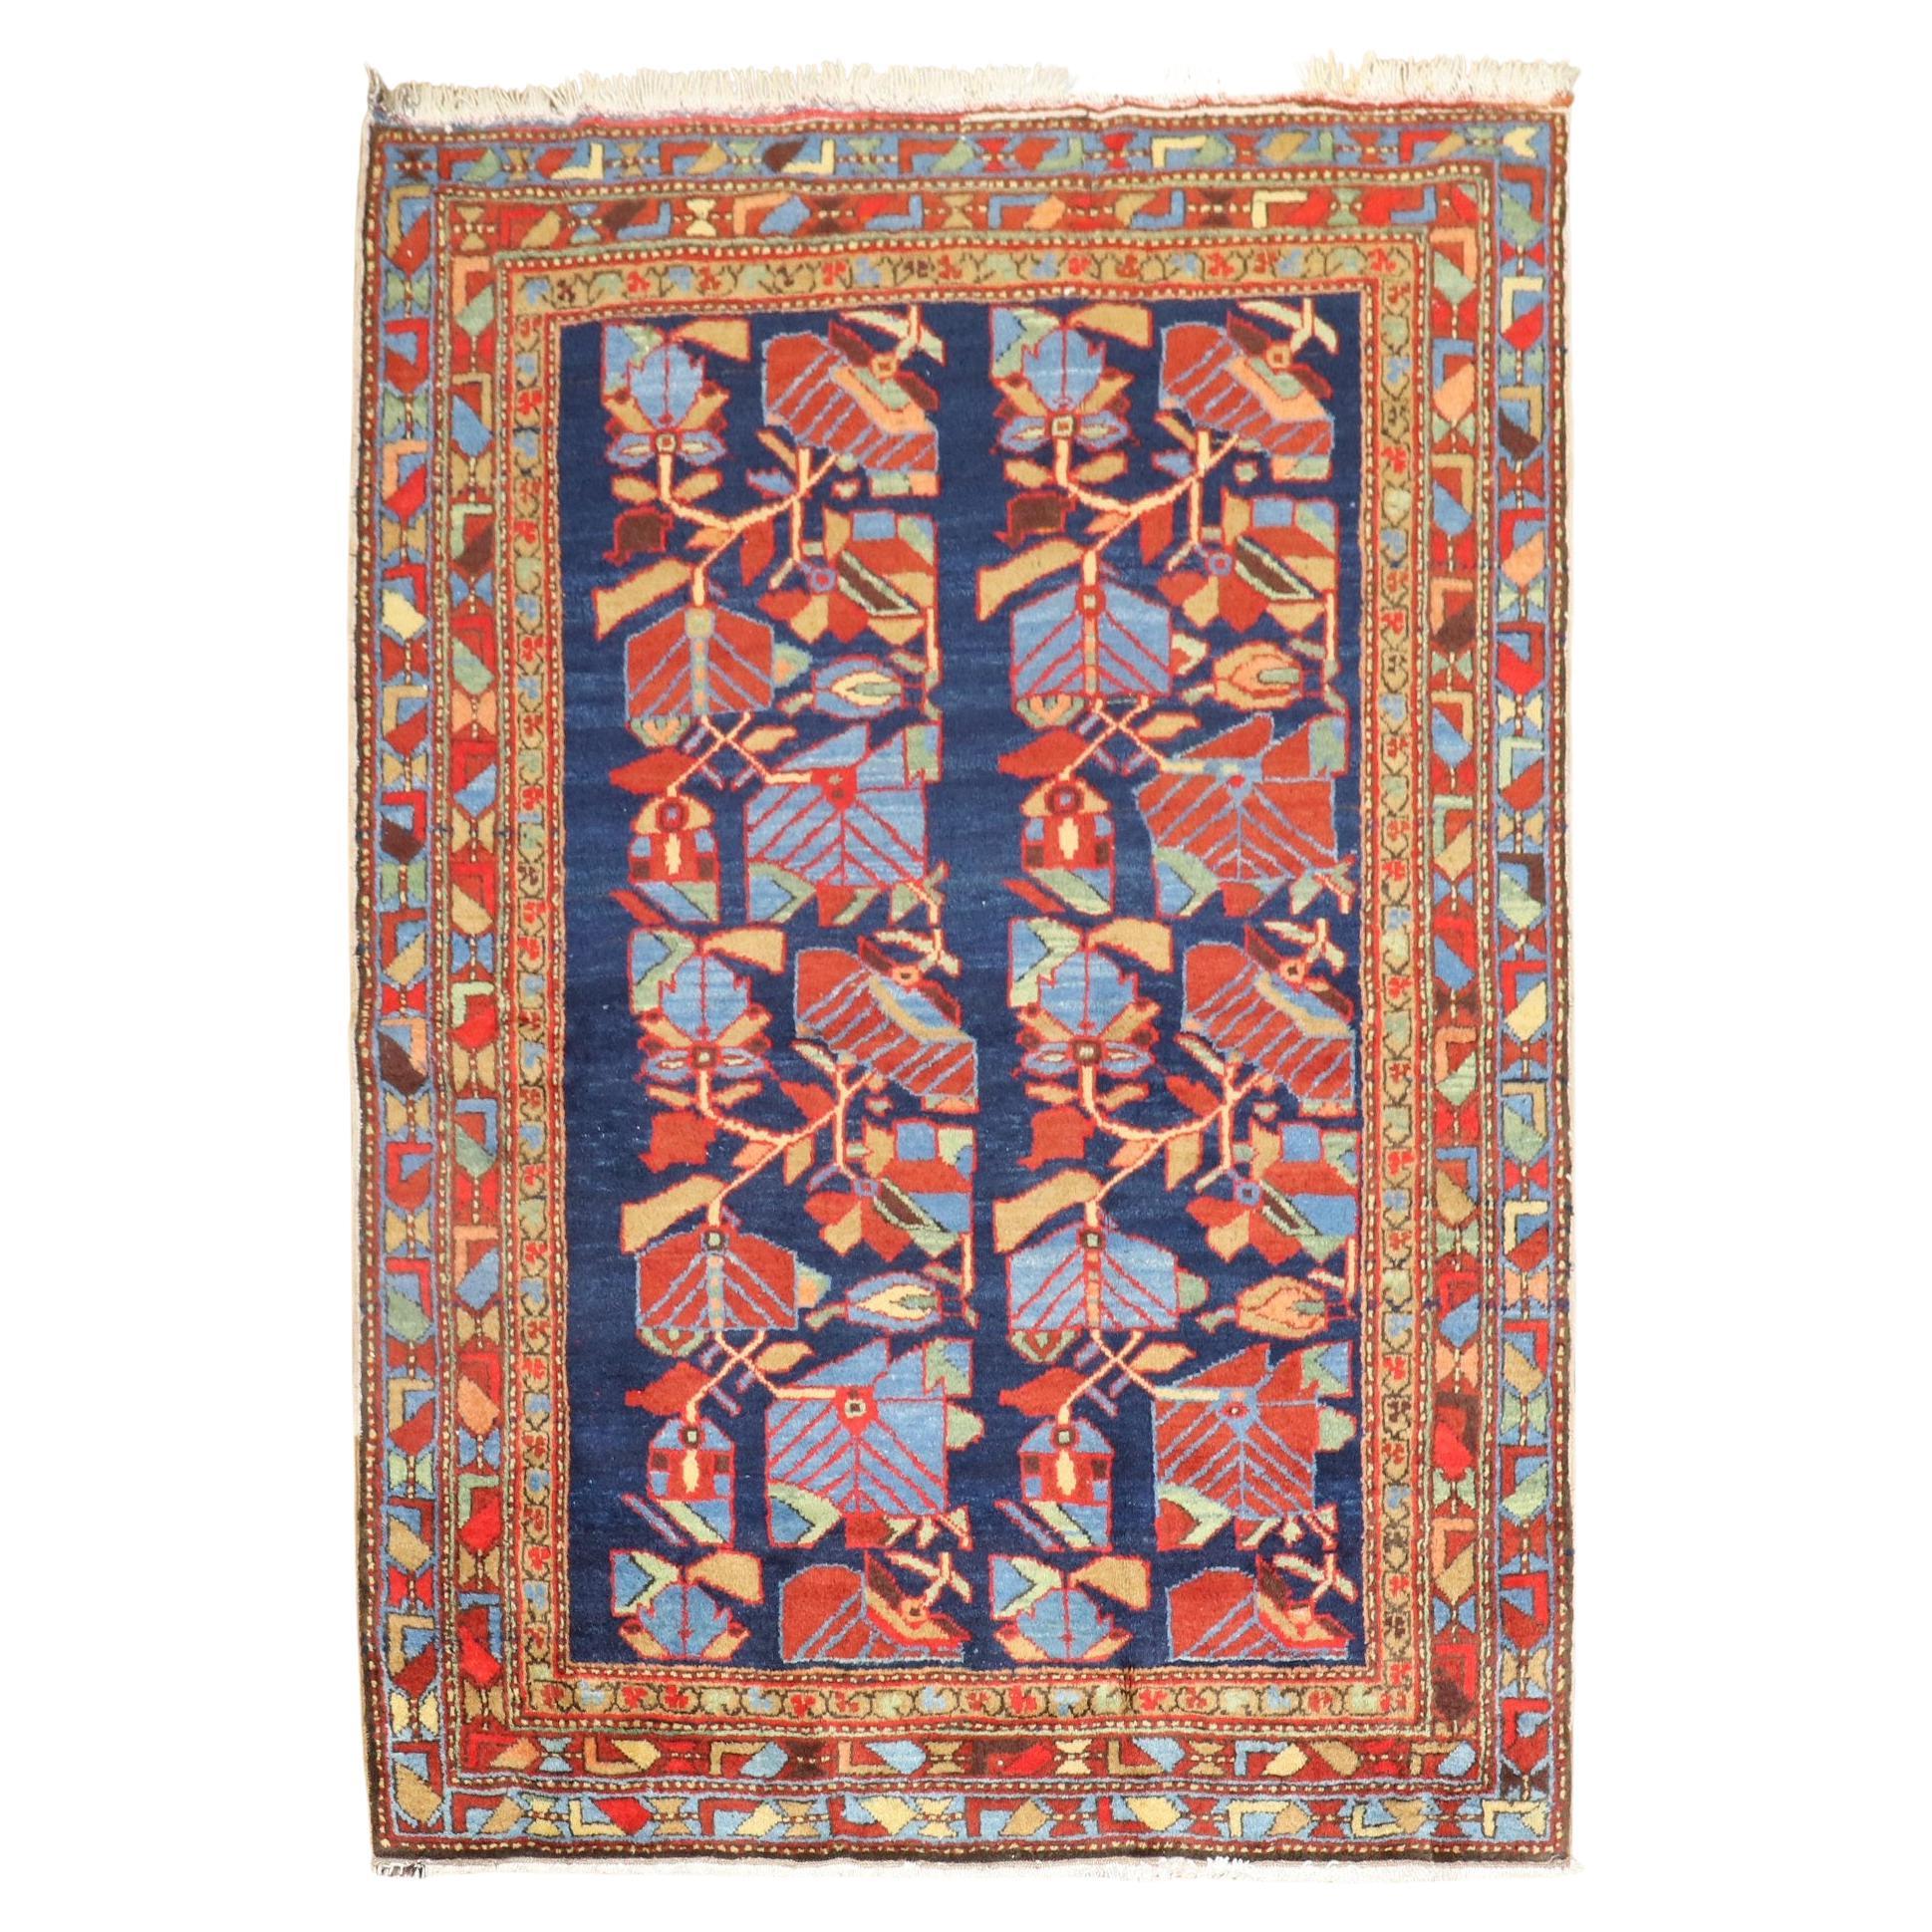 Tapis persan vintage vivant de la collection Zabihi du Nord-Ouest